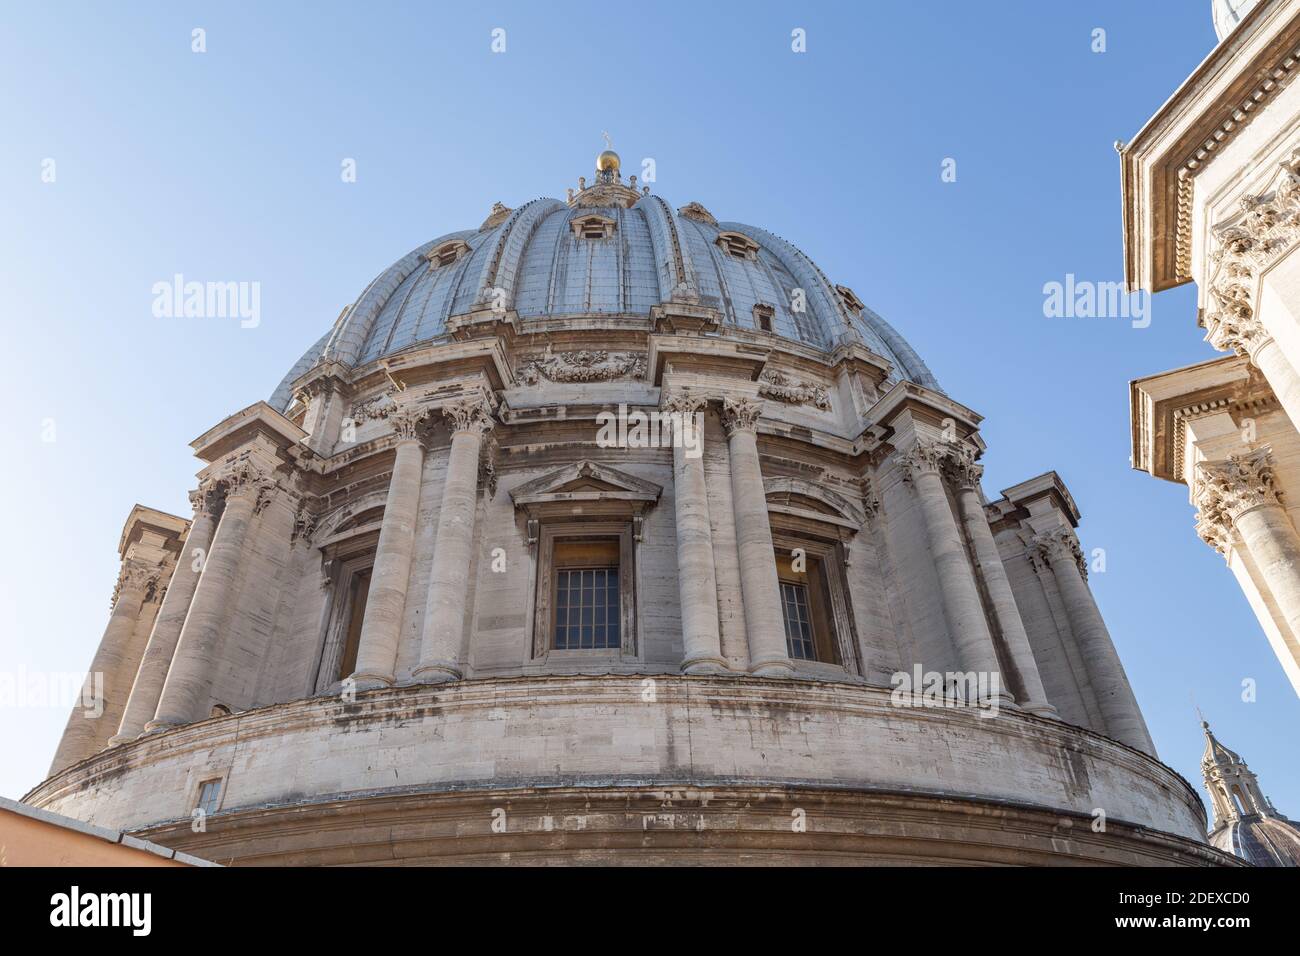 Le dôme de la basilique papale de Saint-Pierre au Vatican, Rome Banque D'Images